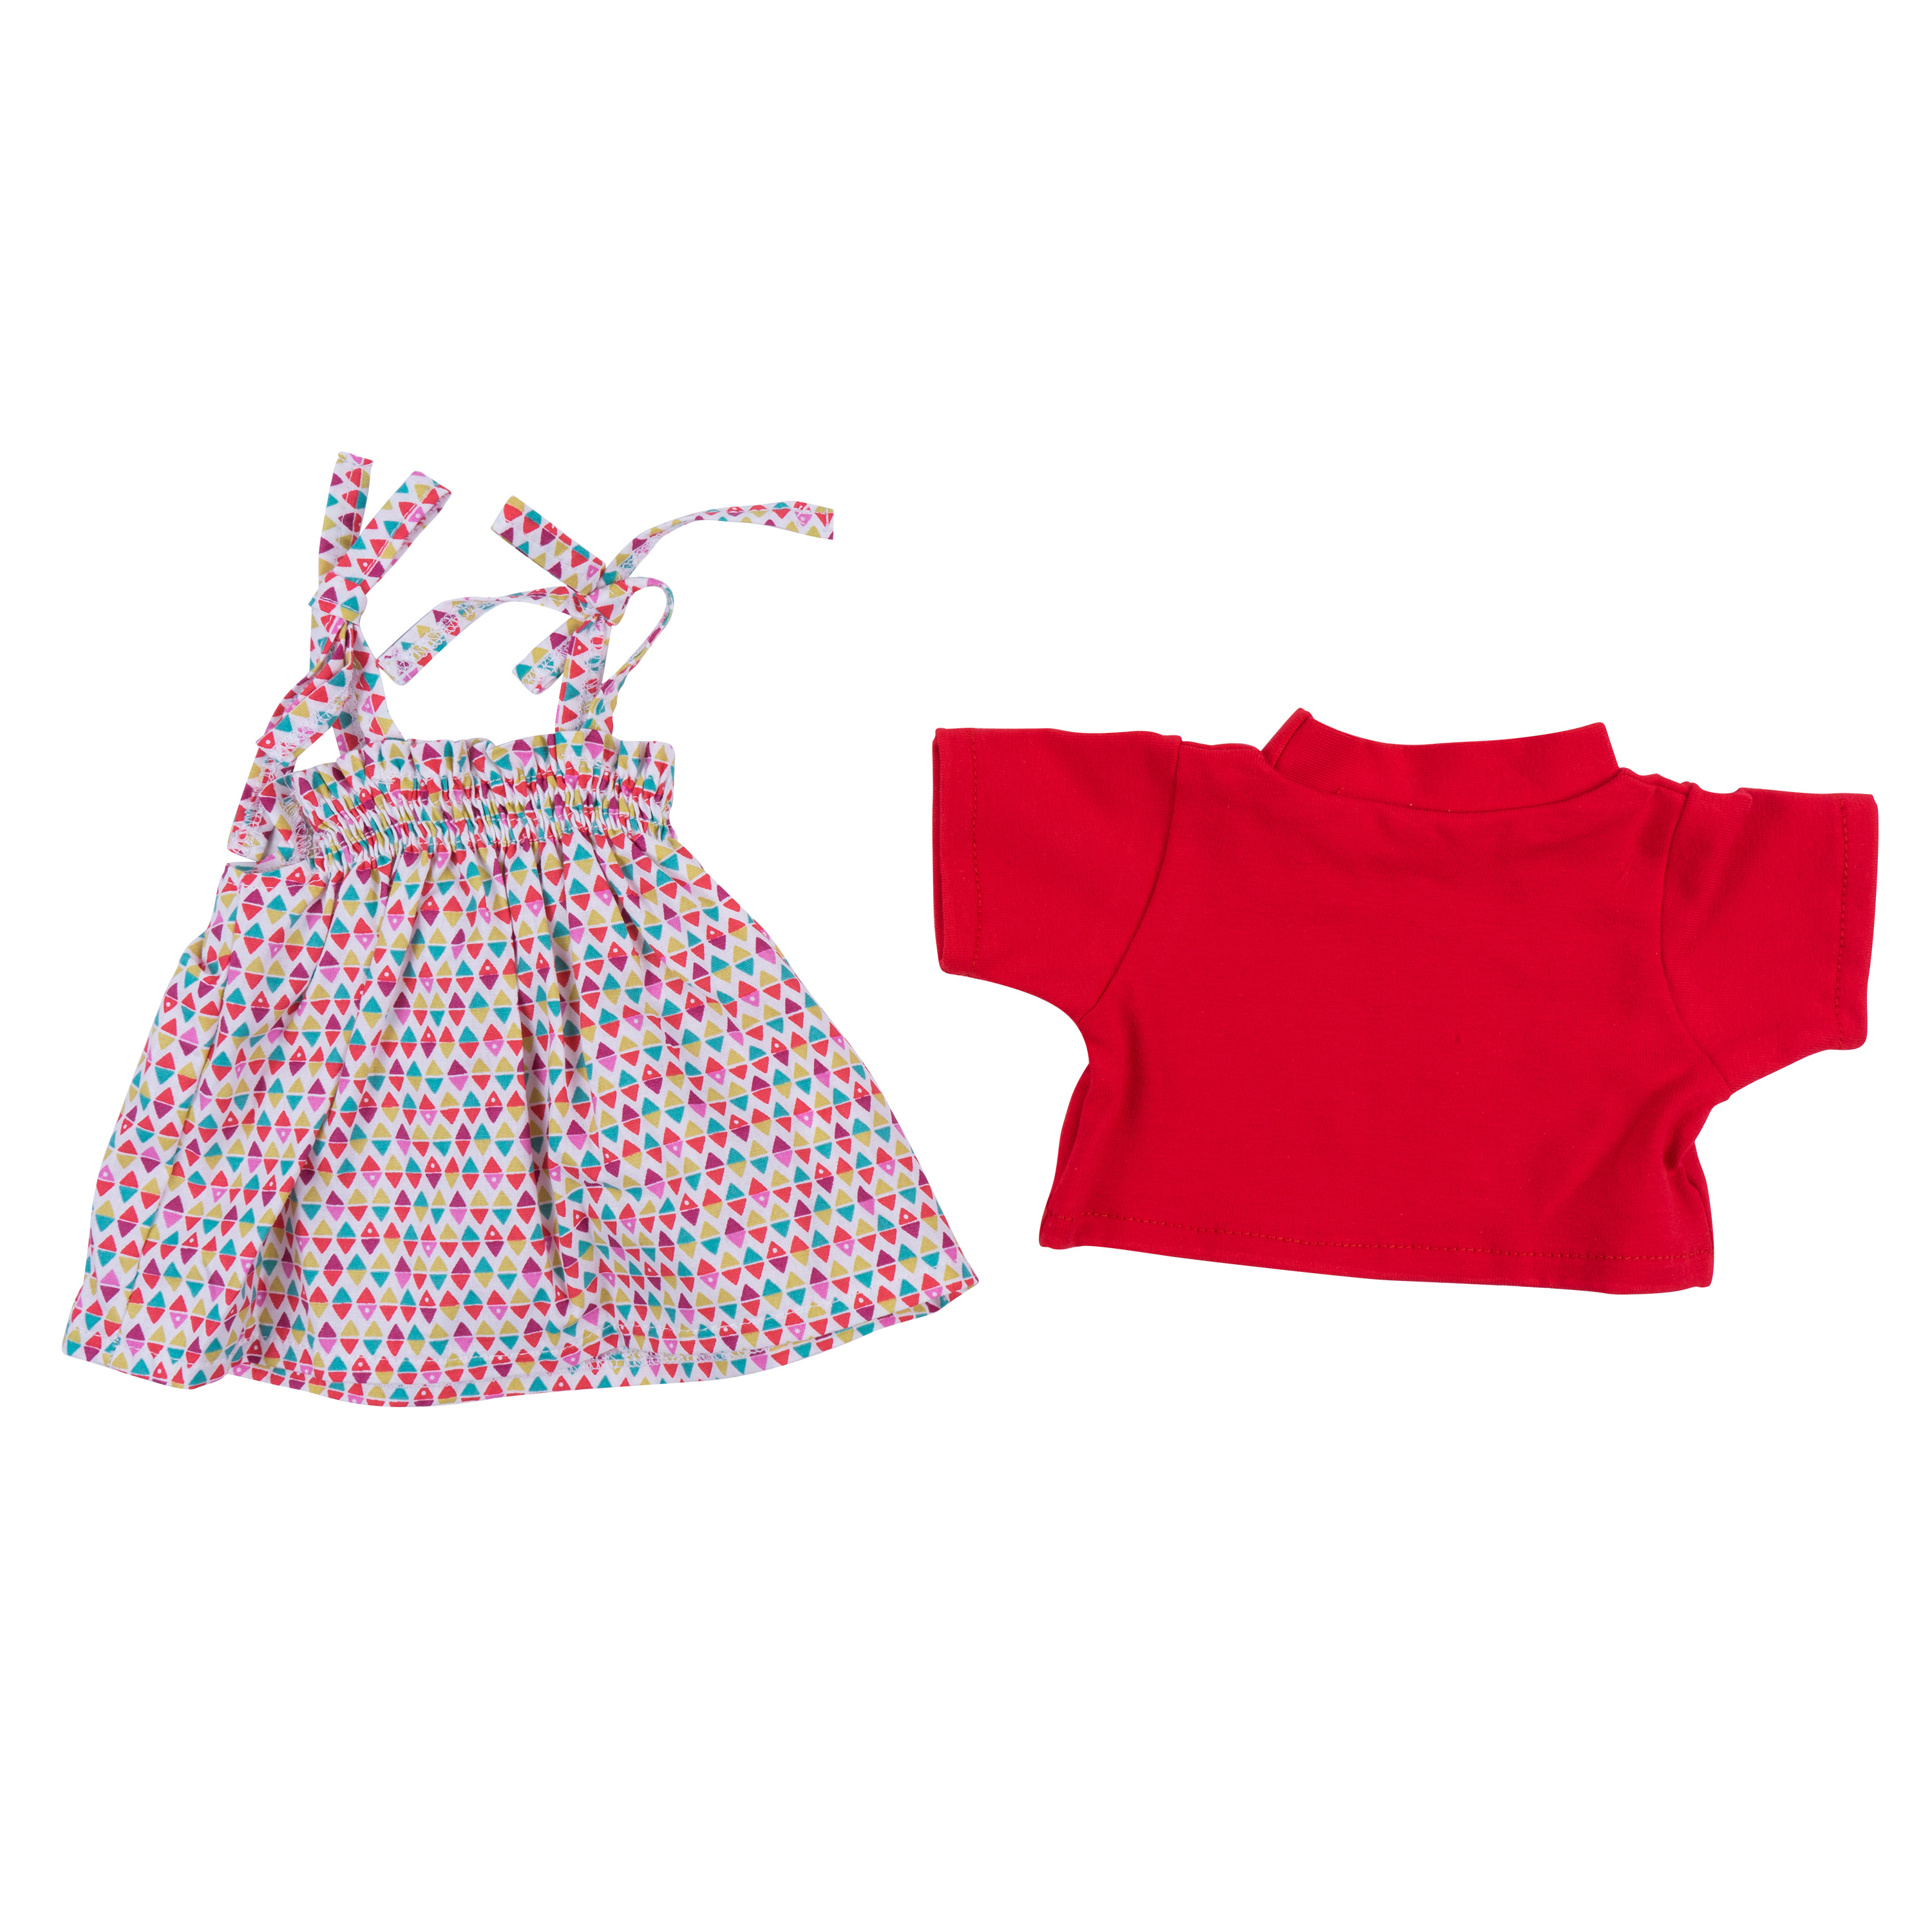 Puppen-Sommerkleidung mit Kleid, Gr. 38 - 42 cm